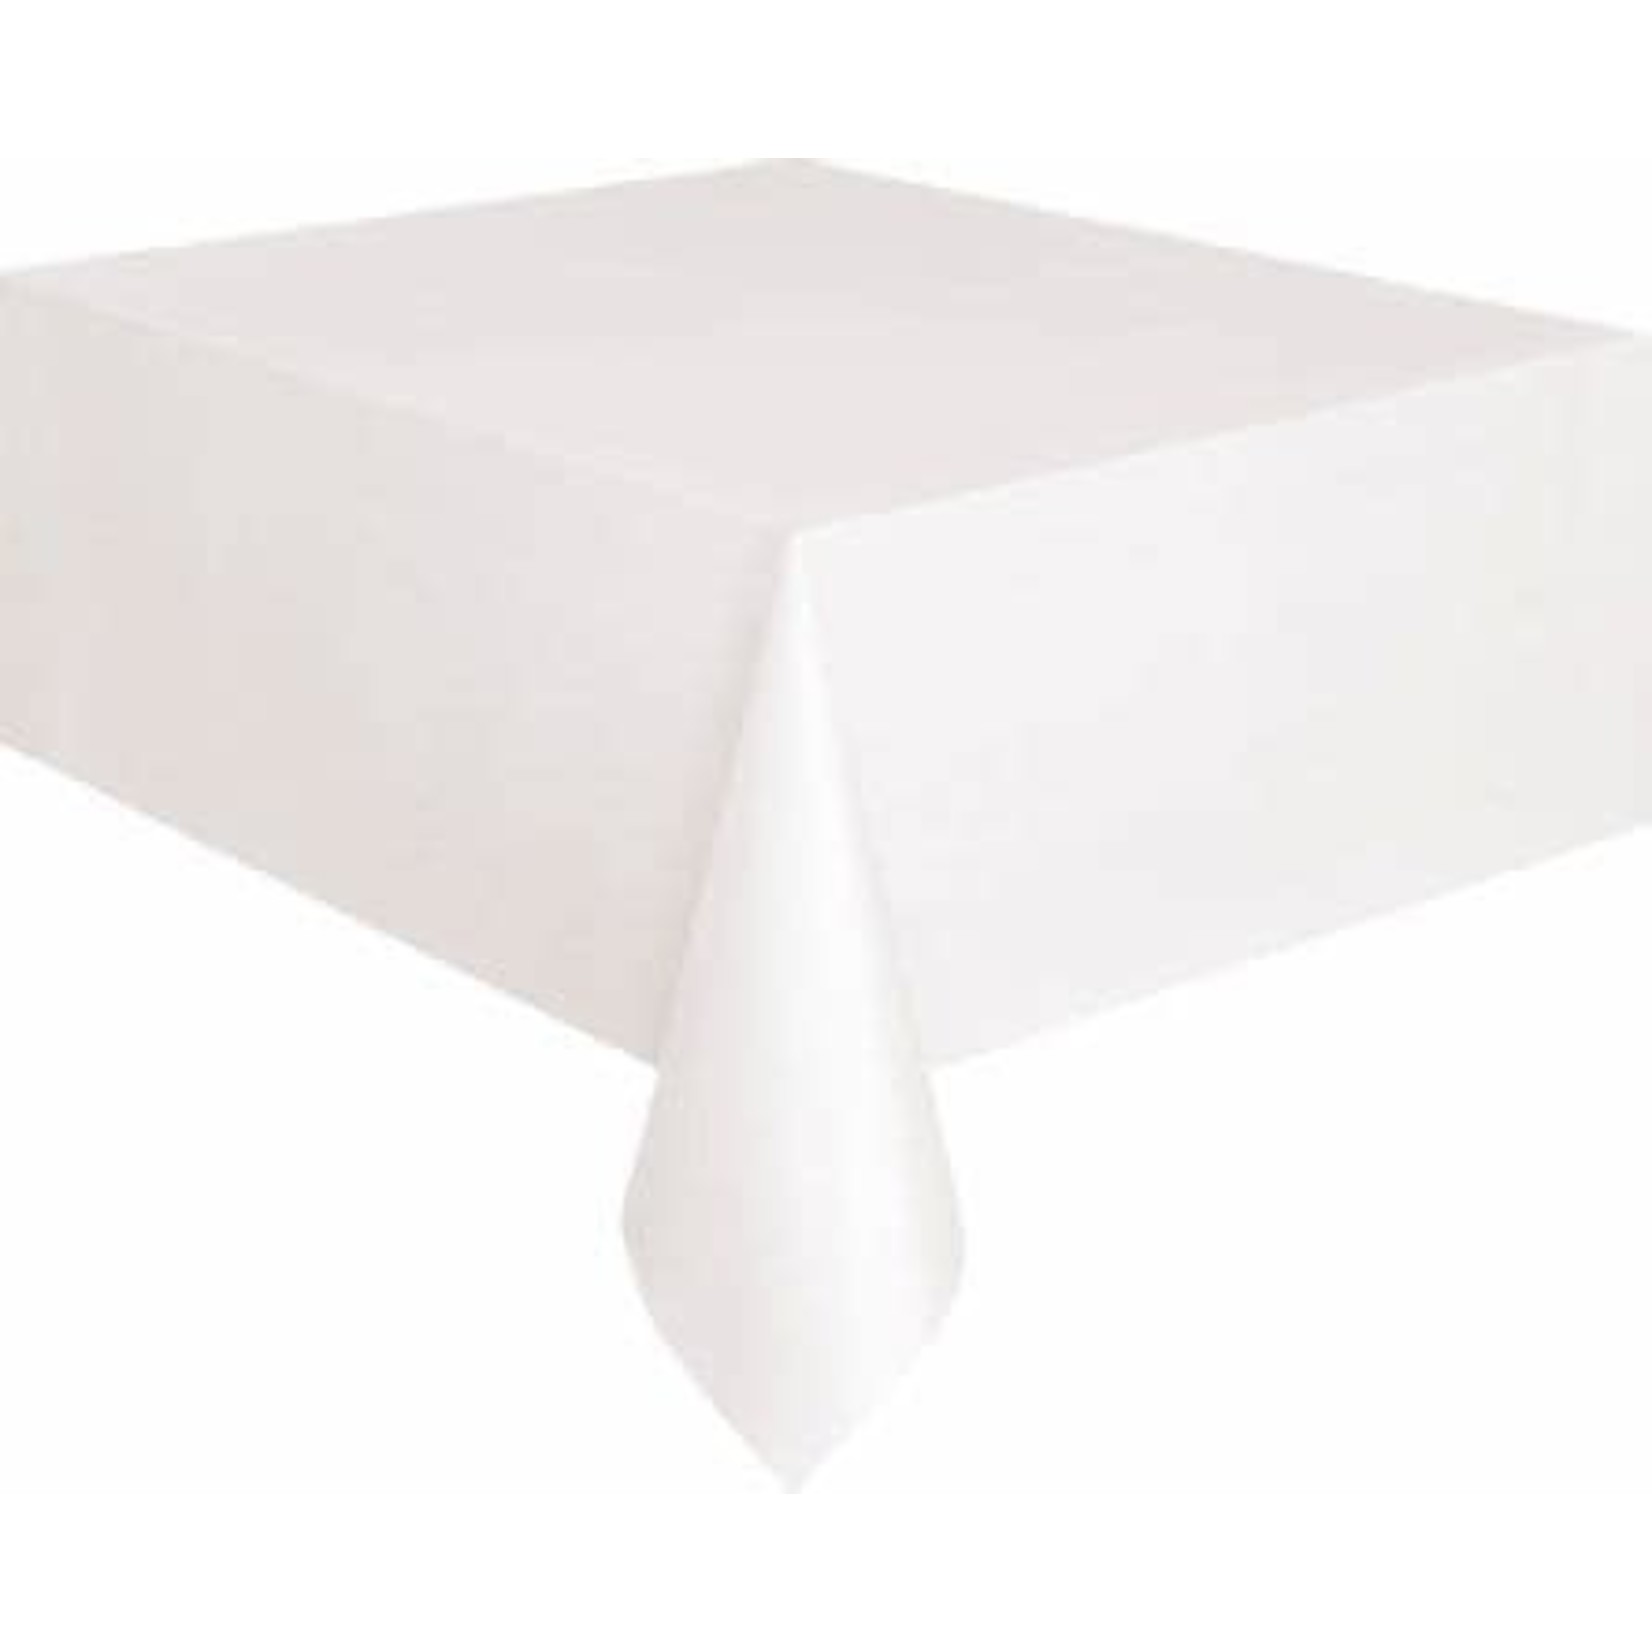 White Rectangular Premier Table Cover 54"x108"